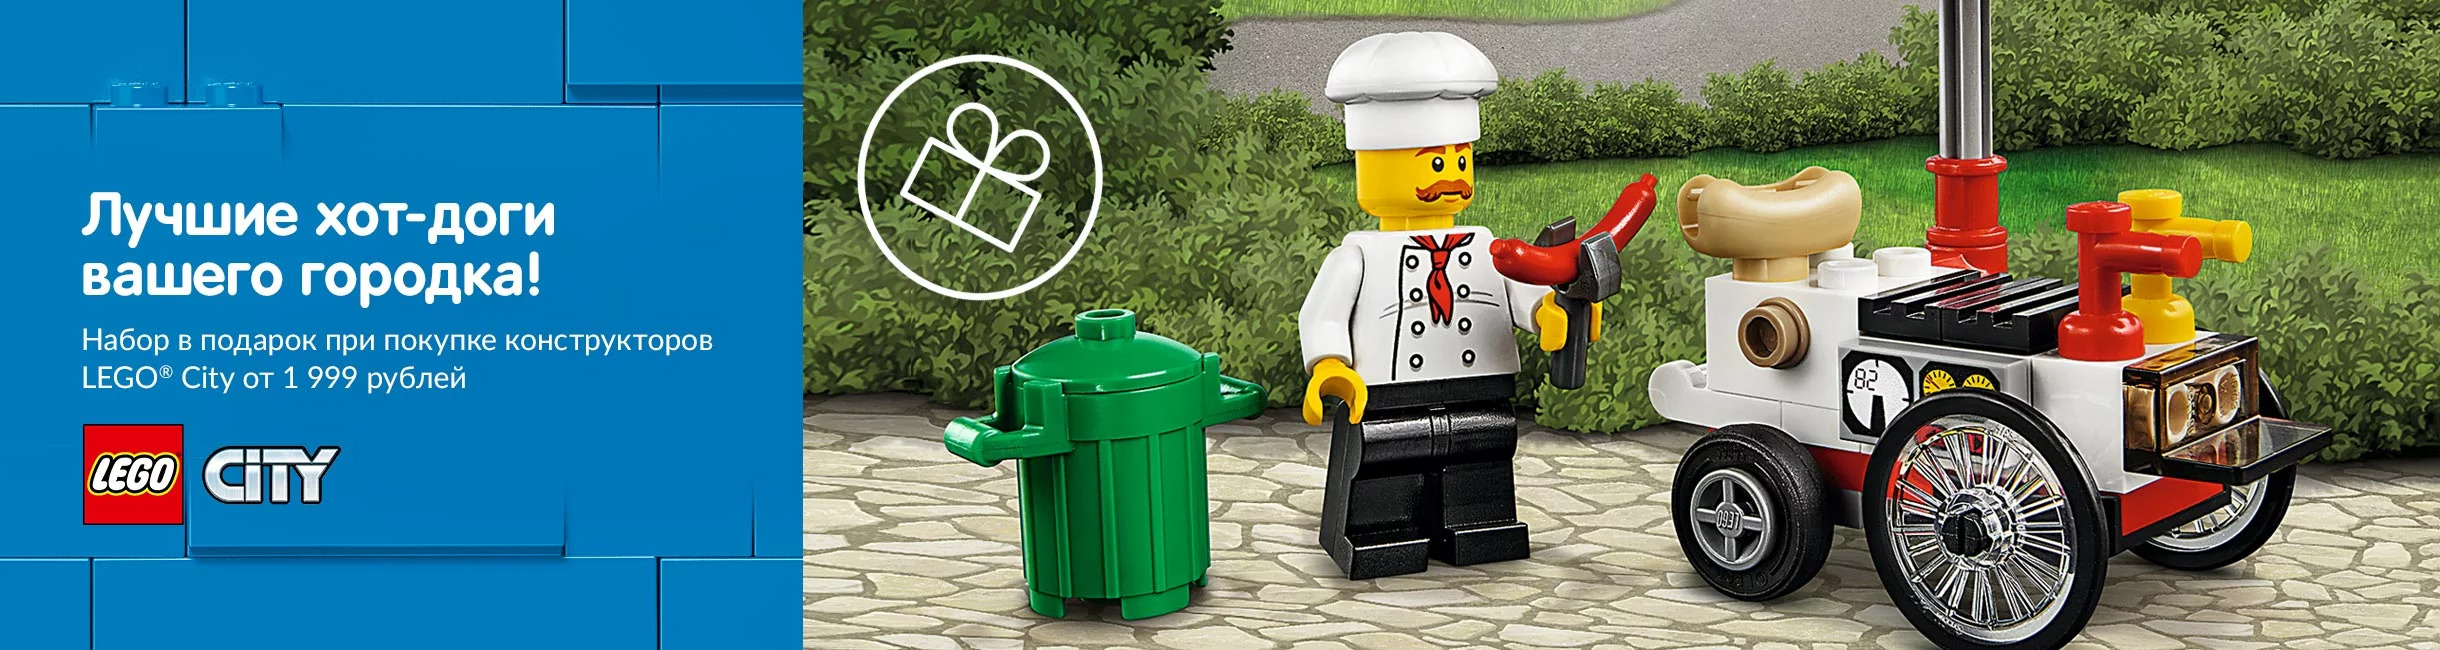 Рекламная акция Лего (LEGO) «Лучшие хот-доги вашего городка!»